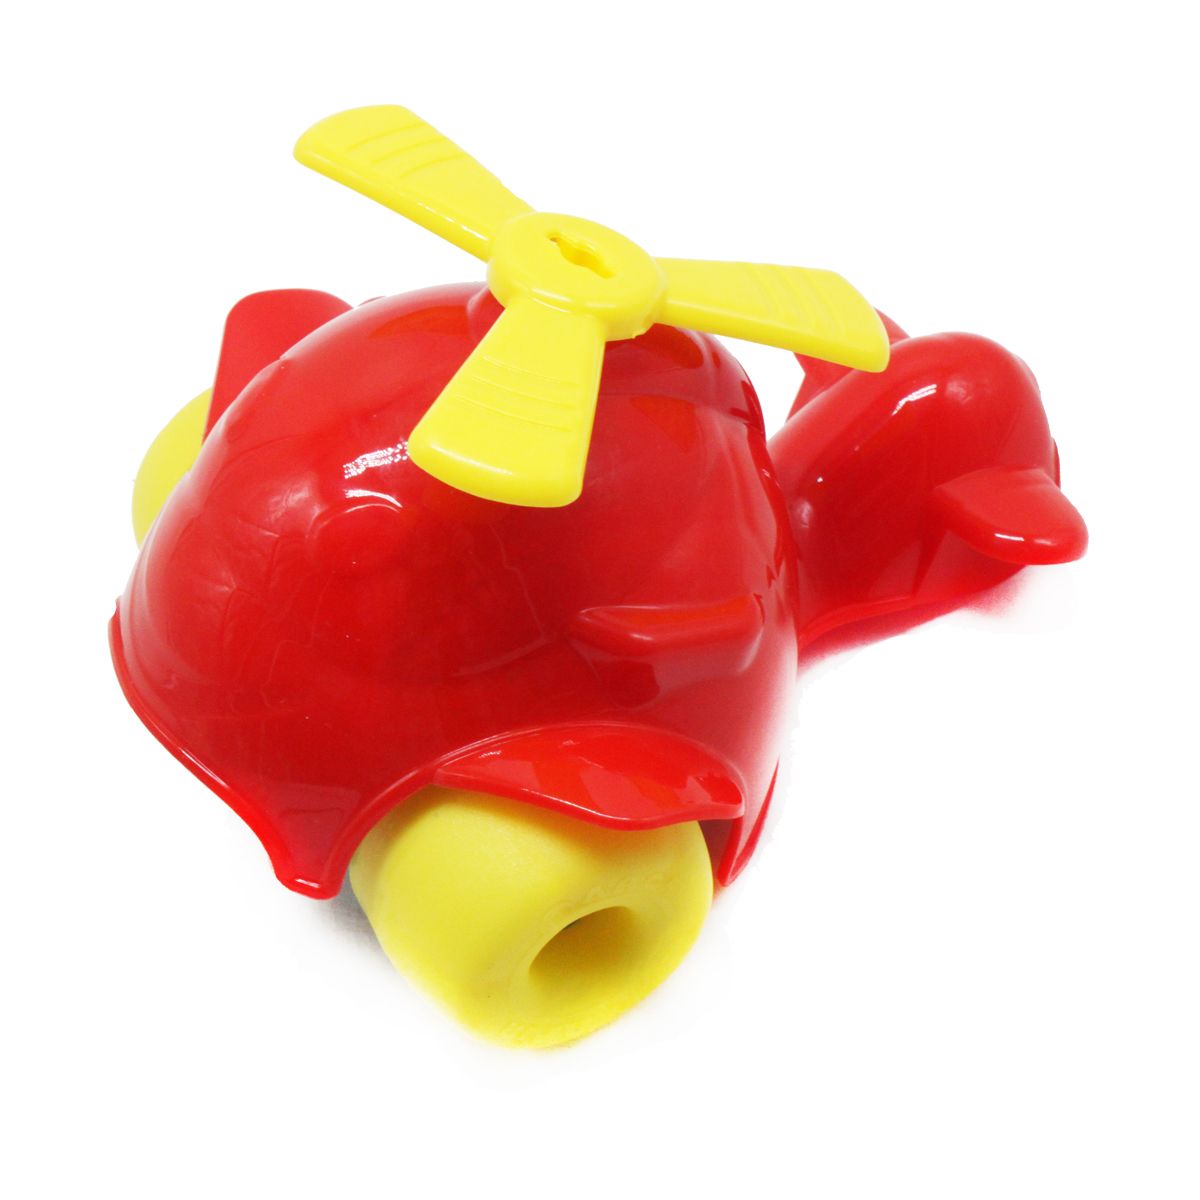 Іграшка-каталка "Вертоліт", червоний